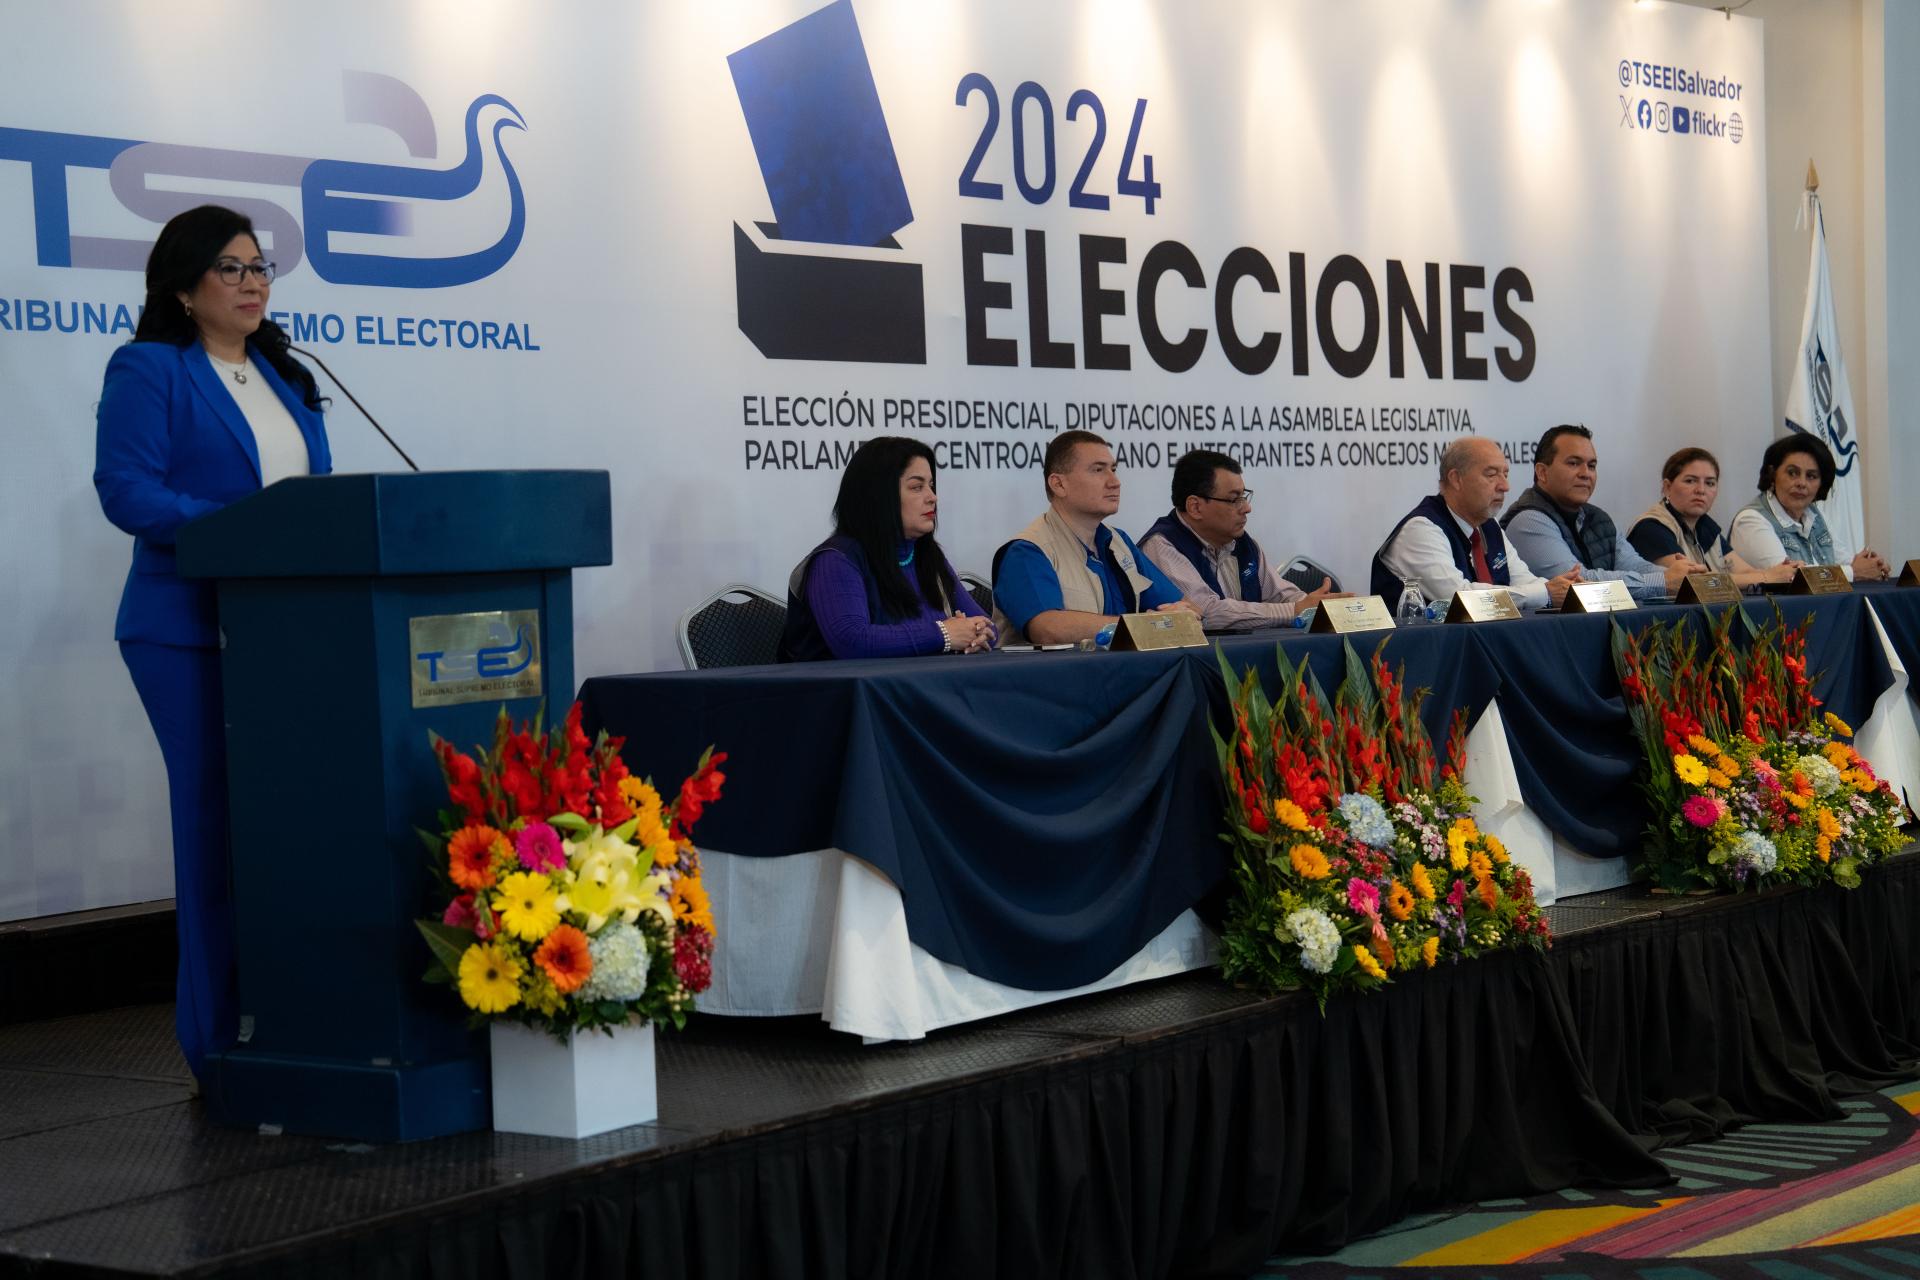 ELECCIONES 2024: La presidenta del TSE, Dora Esmeralda Martínez, en representación del Organismo Colegiado, dio por iniciada la jornada electoral para la elección de diputados al Parlamento Centroamericano y concejos municipales.